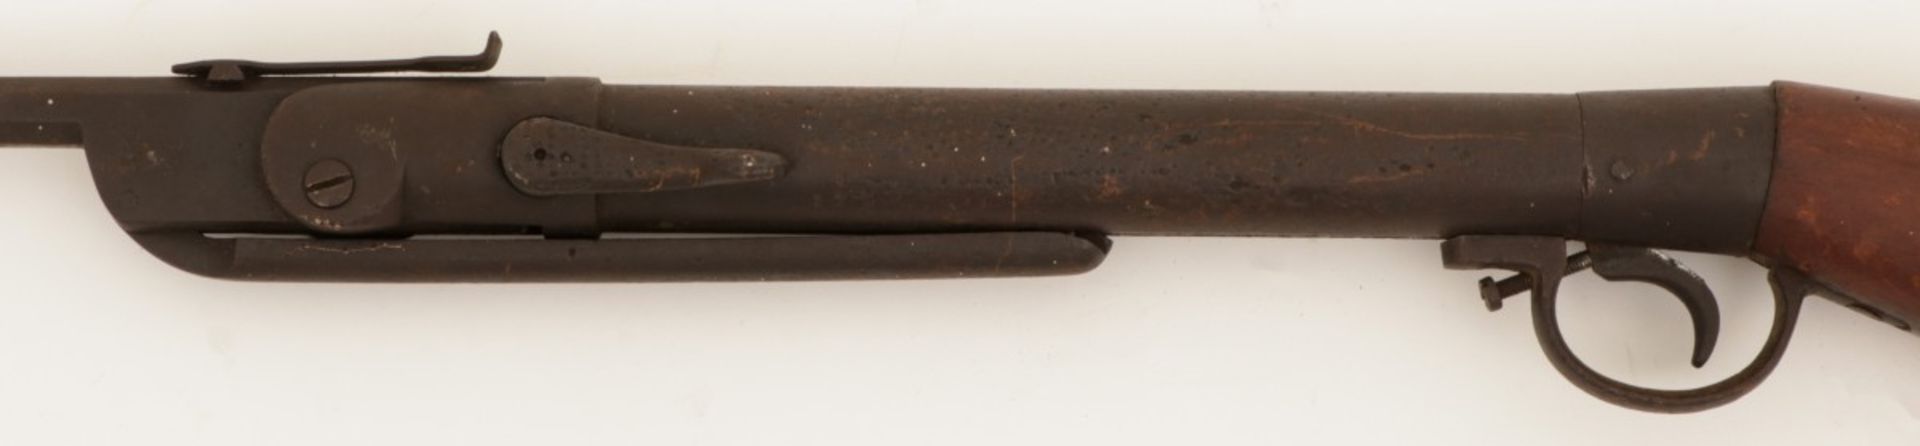 A single barrel shotgun, ca. 1900. - Image 3 of 3